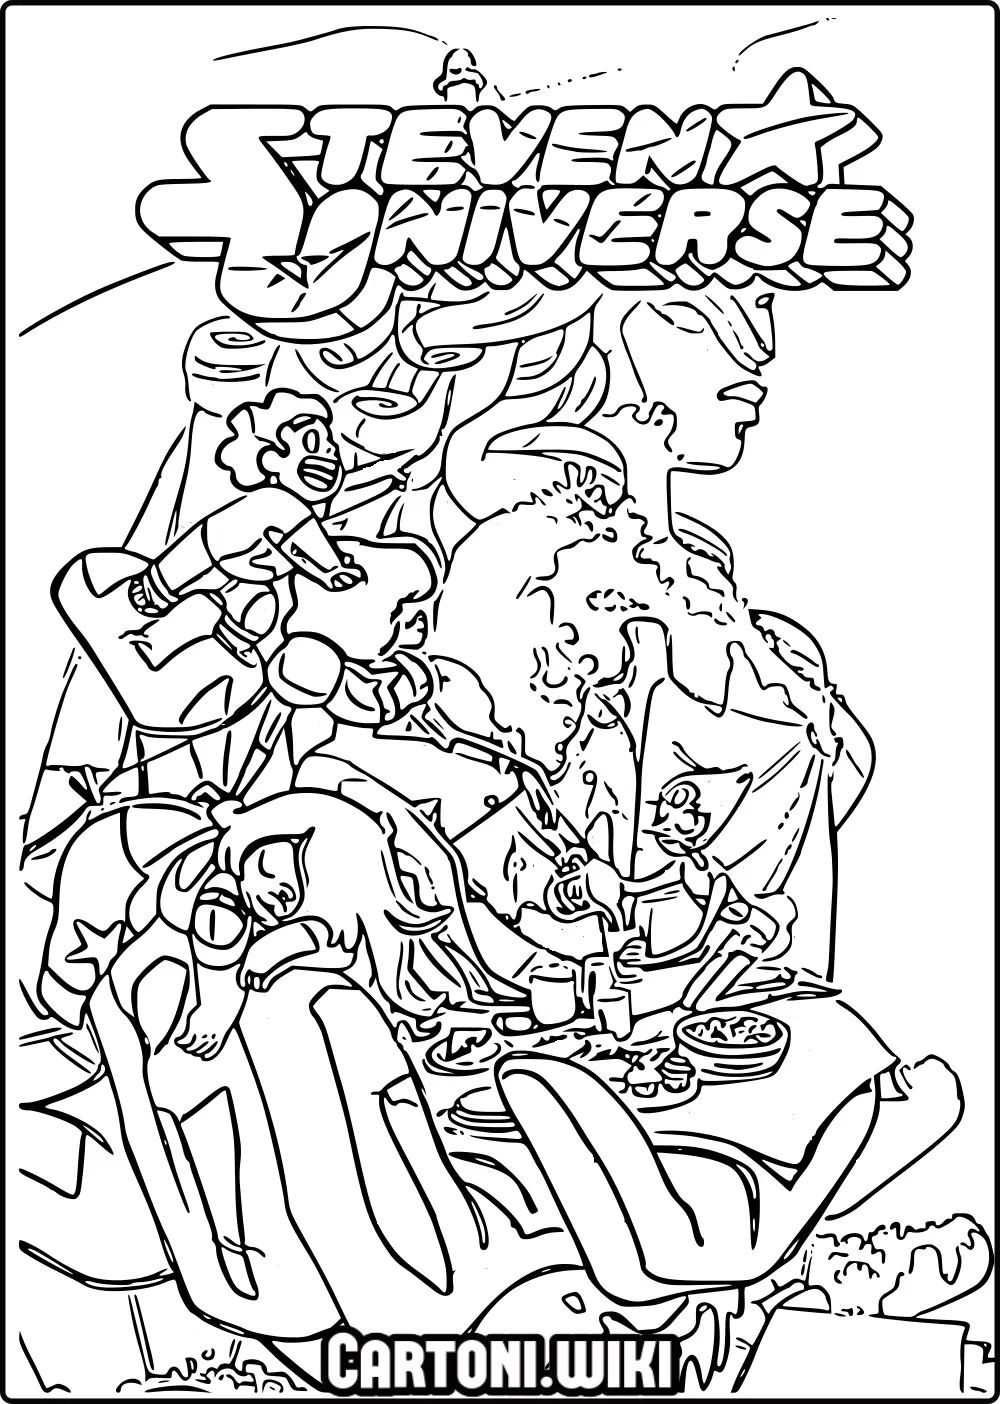 Stampa e colora Steven Universe